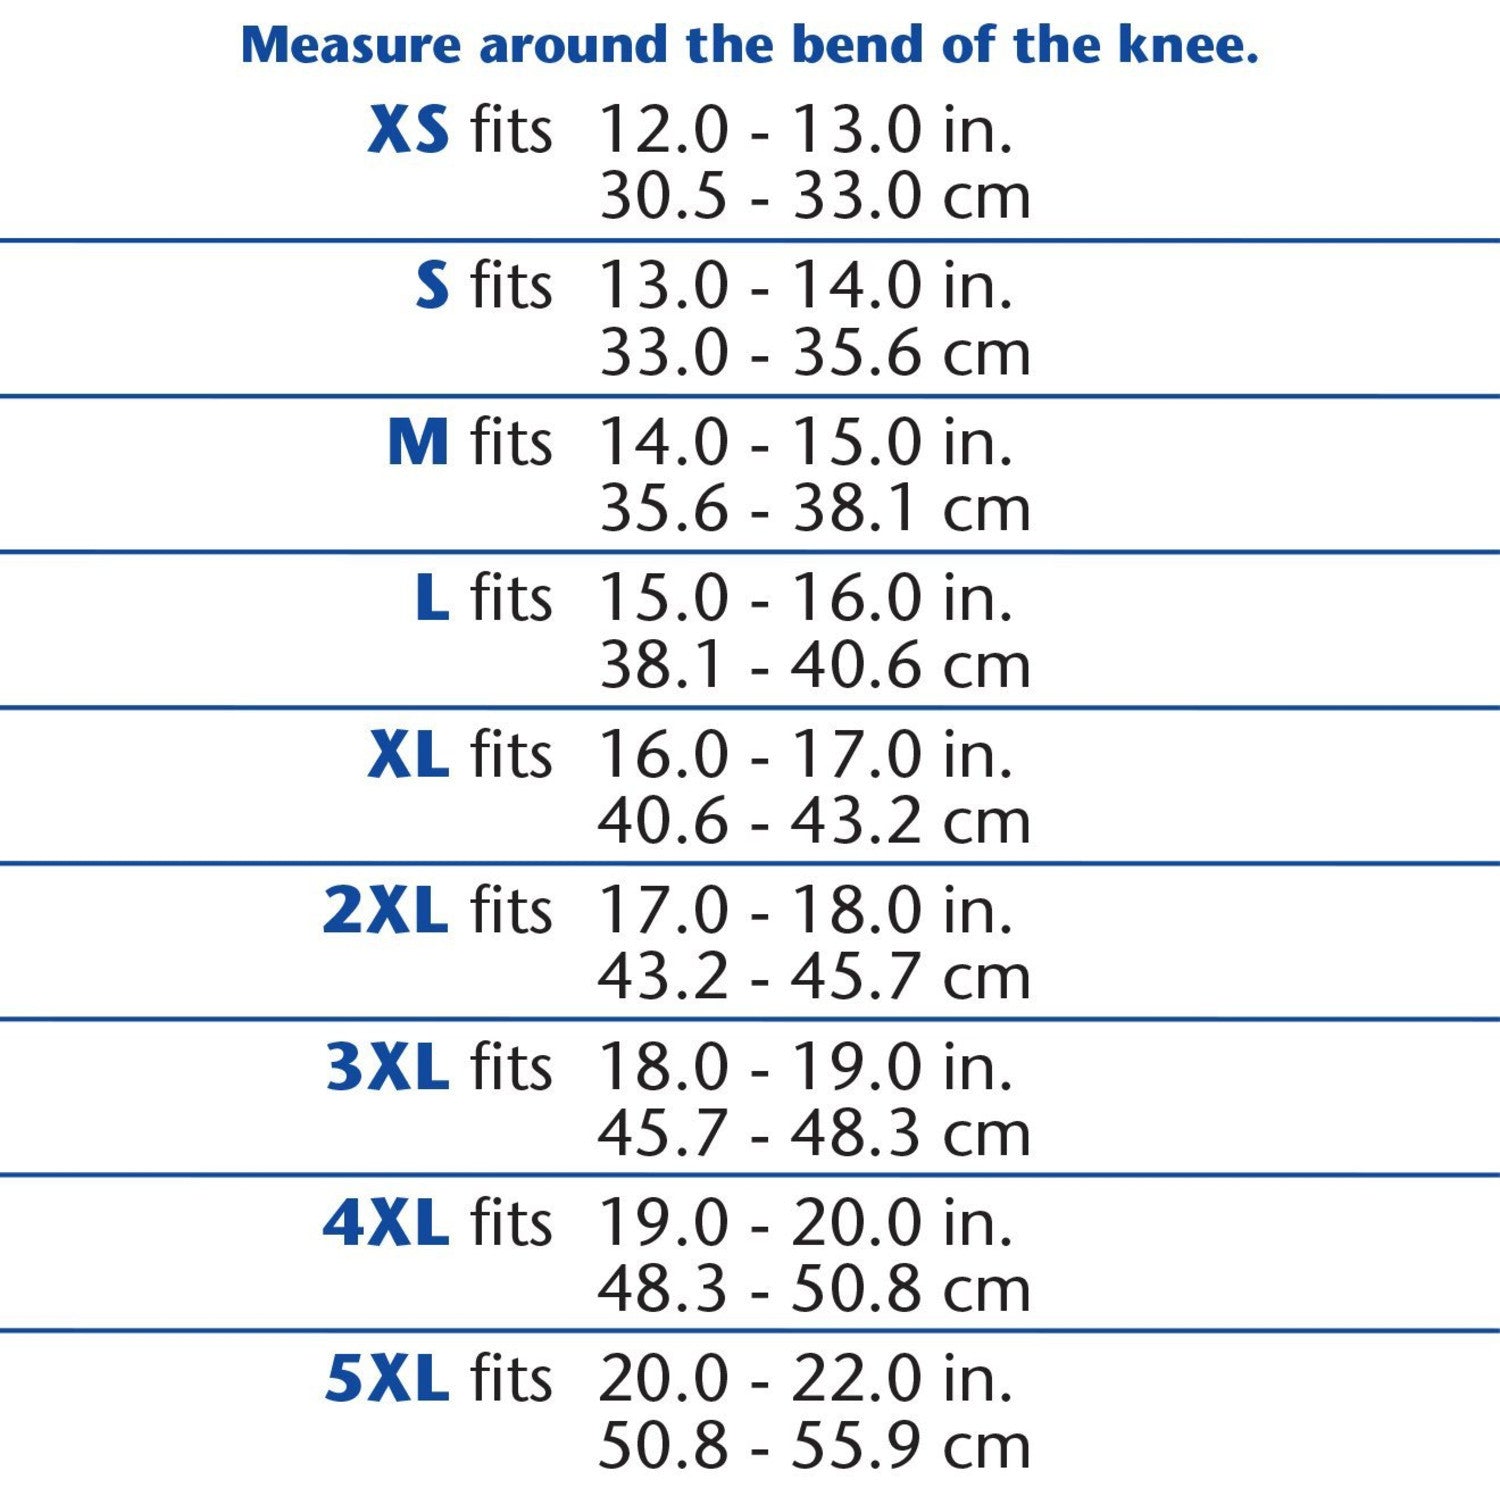 OTC Neoprene Knee Stabilizer Wrap - Spiral Stays, Size Chart